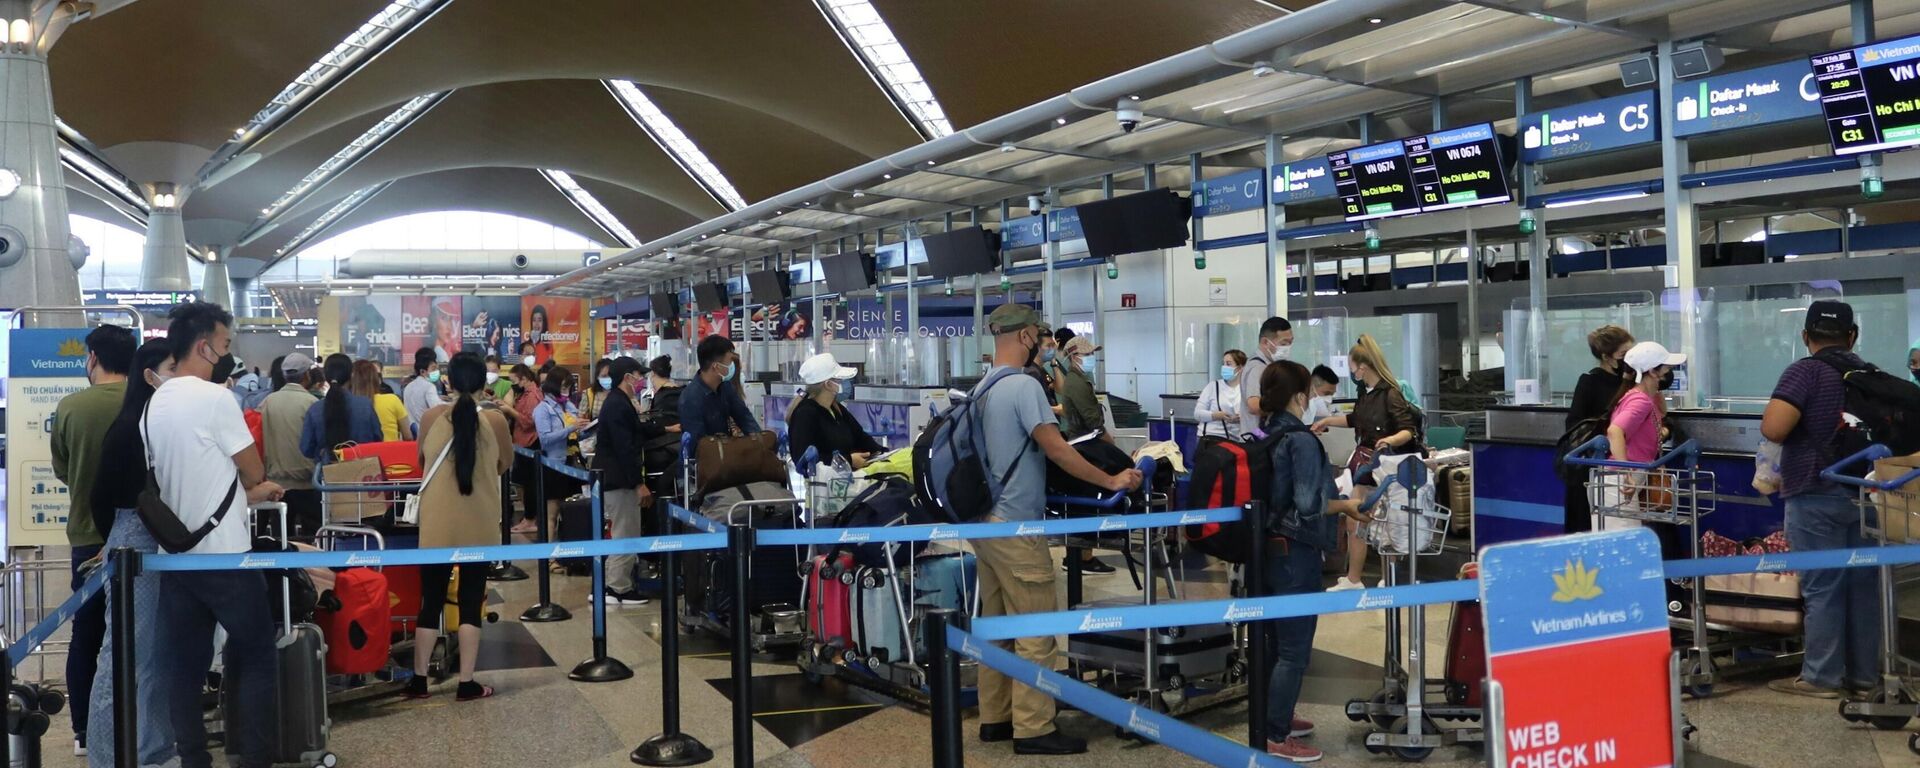 Hành khách làm thủ tục ngày 17/2/2022 tại sân bay quốc tế Kuala Lumpur, Malaysia để lên chuyến bay VN674. - Sputnik Việt Nam, 1920, 15.03.2022